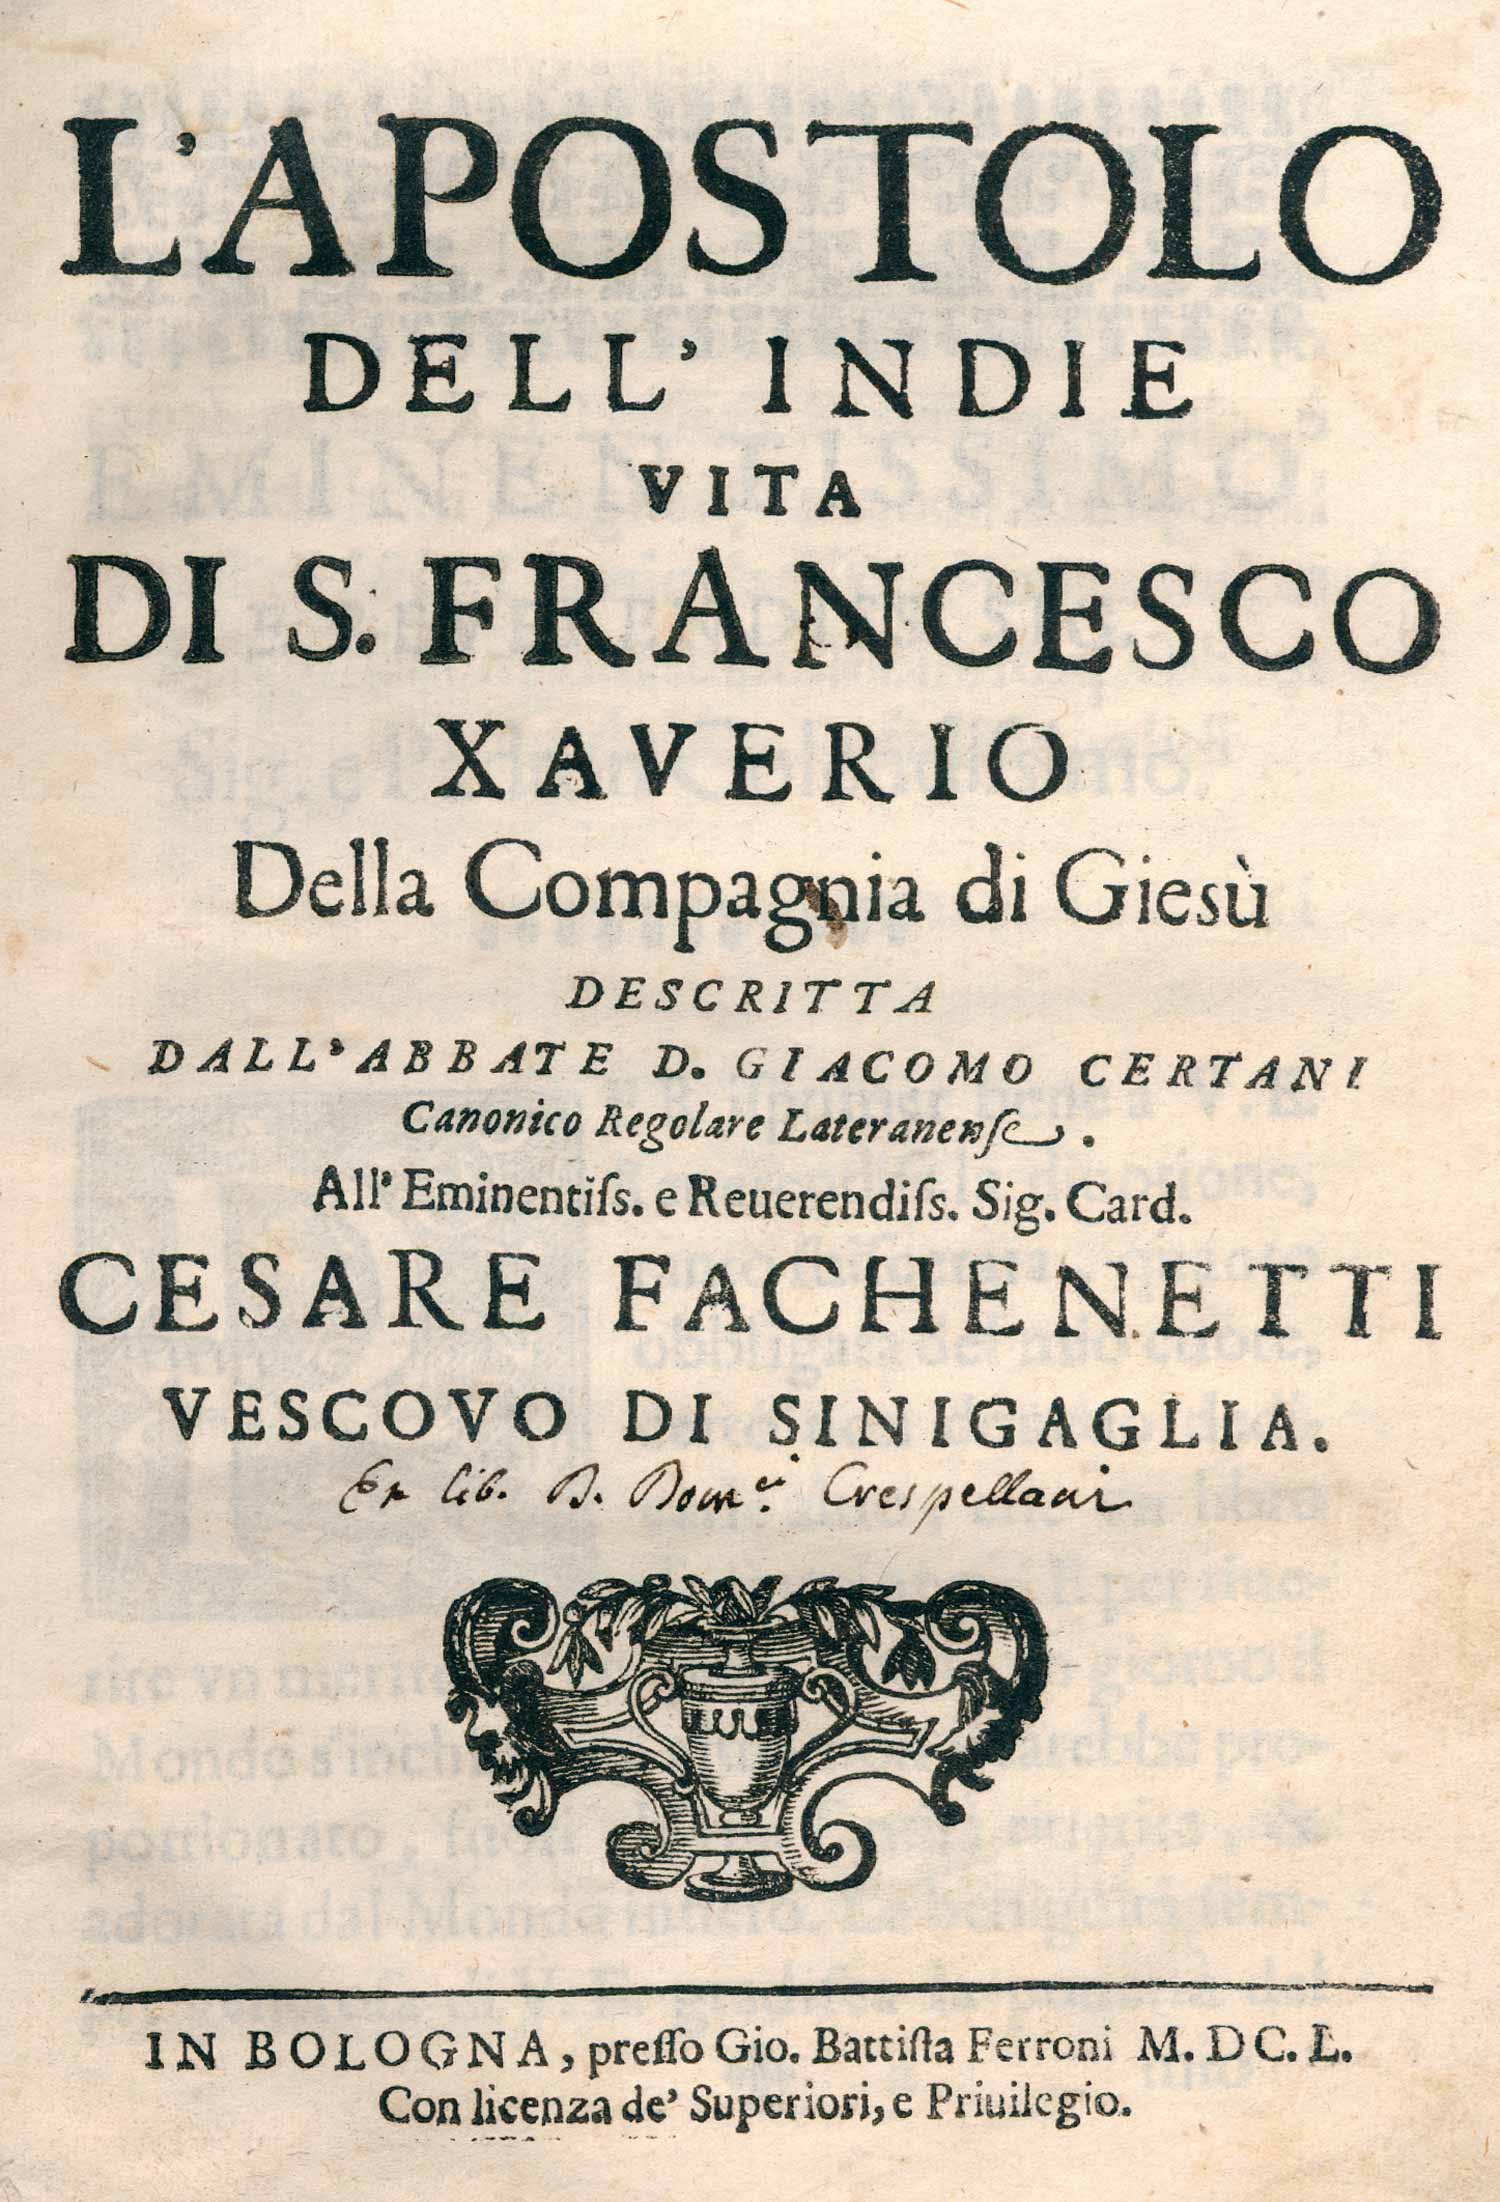 Certani,G. L'Apostolo dell'Indie vita di S.Francesco Xaverio della compangnia di Giesu. Bologna,